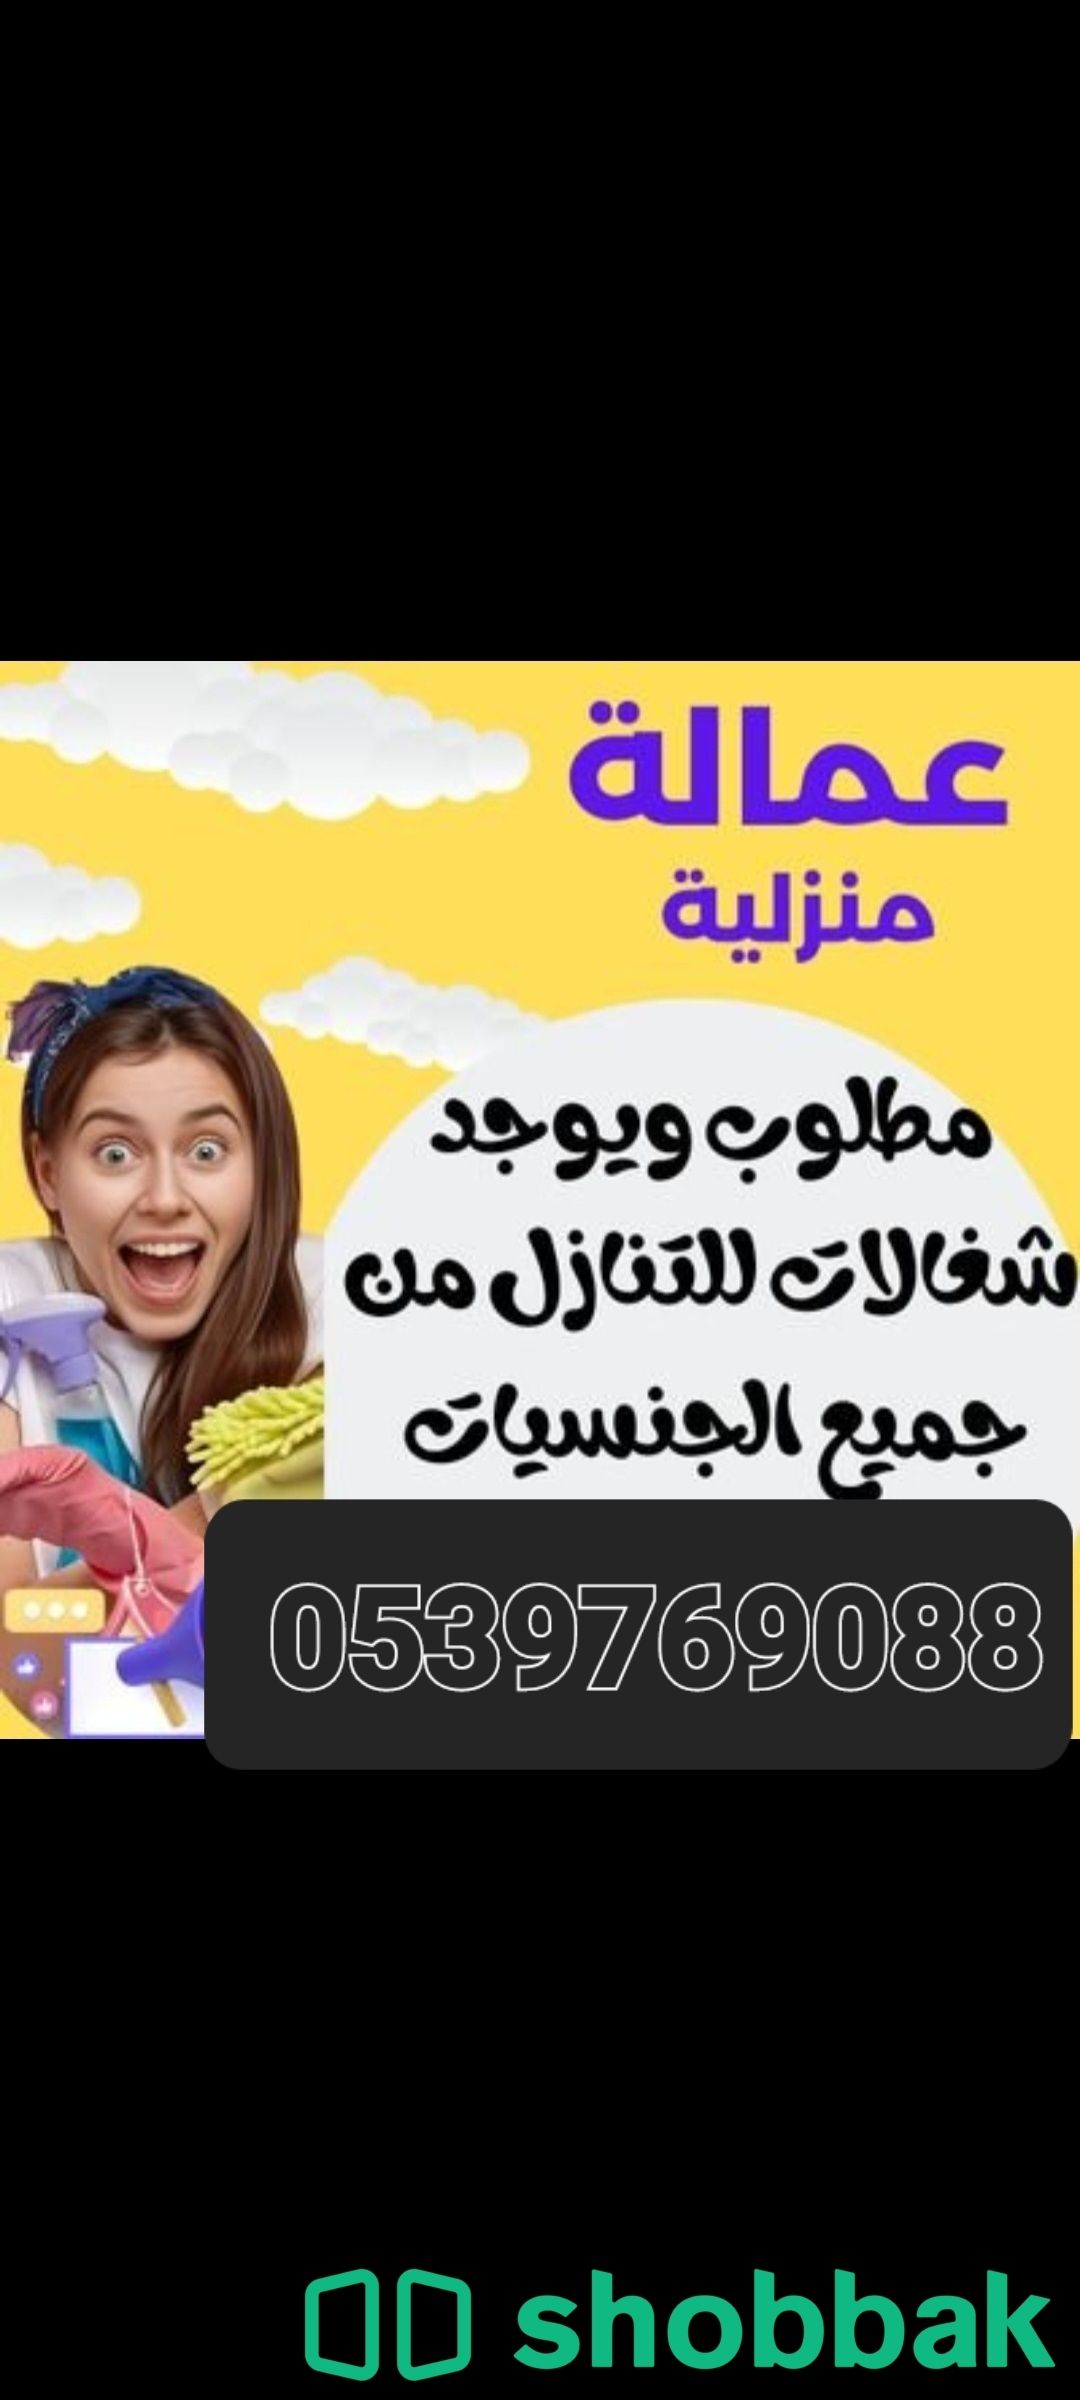 مطلوب عاملات وطباخات للتنازل بافضل الاسعار 0539769088 Shobbak Saudi Arabia